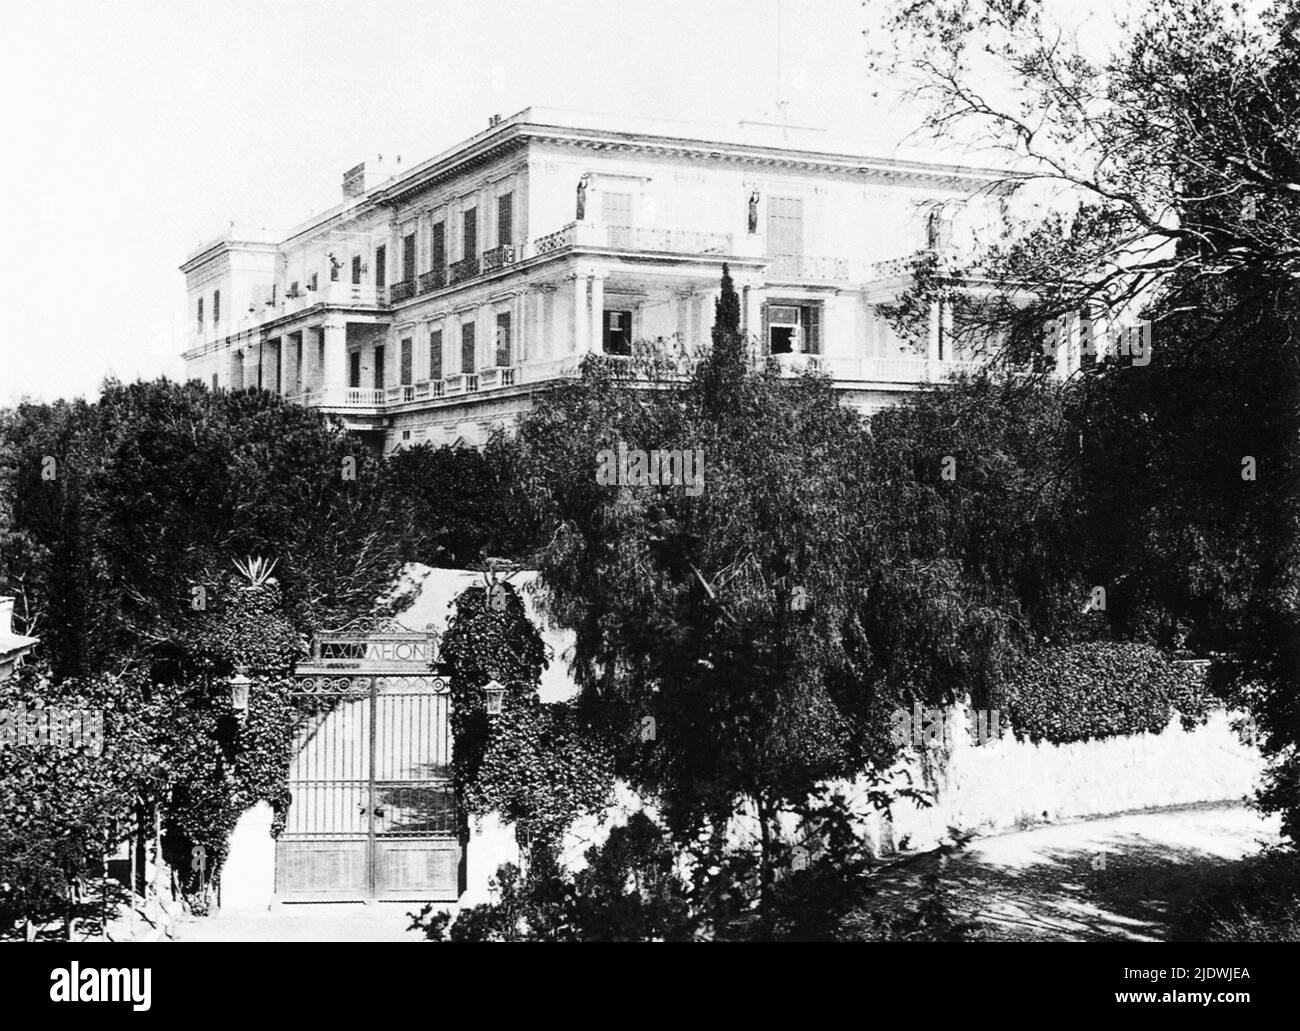 1890 environ , Ile de Corfou , Grèce : le palais de l' ACHILLEION , nommé en l'honneur du héros mytologique Achilles , maison de vacances de l'impératrice autrichienne Elisabeth de HABSBOURG ( SISSI von Wittelsbach , 1937 - 1898 ) . L'impératrice a été tuée par l'anarchiste italien Luigi Lucheni à Genève, Suisse - ABSBURG - ASBURG - ASBURGO - NOBLESSE - NOBILI - NOGILTA' - REALI - HASBURG - ROYAUTÉ - ELISABETTA DI BAVIERA - Corfù - giardino - jardin - Archileggiatura - Palazzo ---- GBvilazzo Banque D'Images